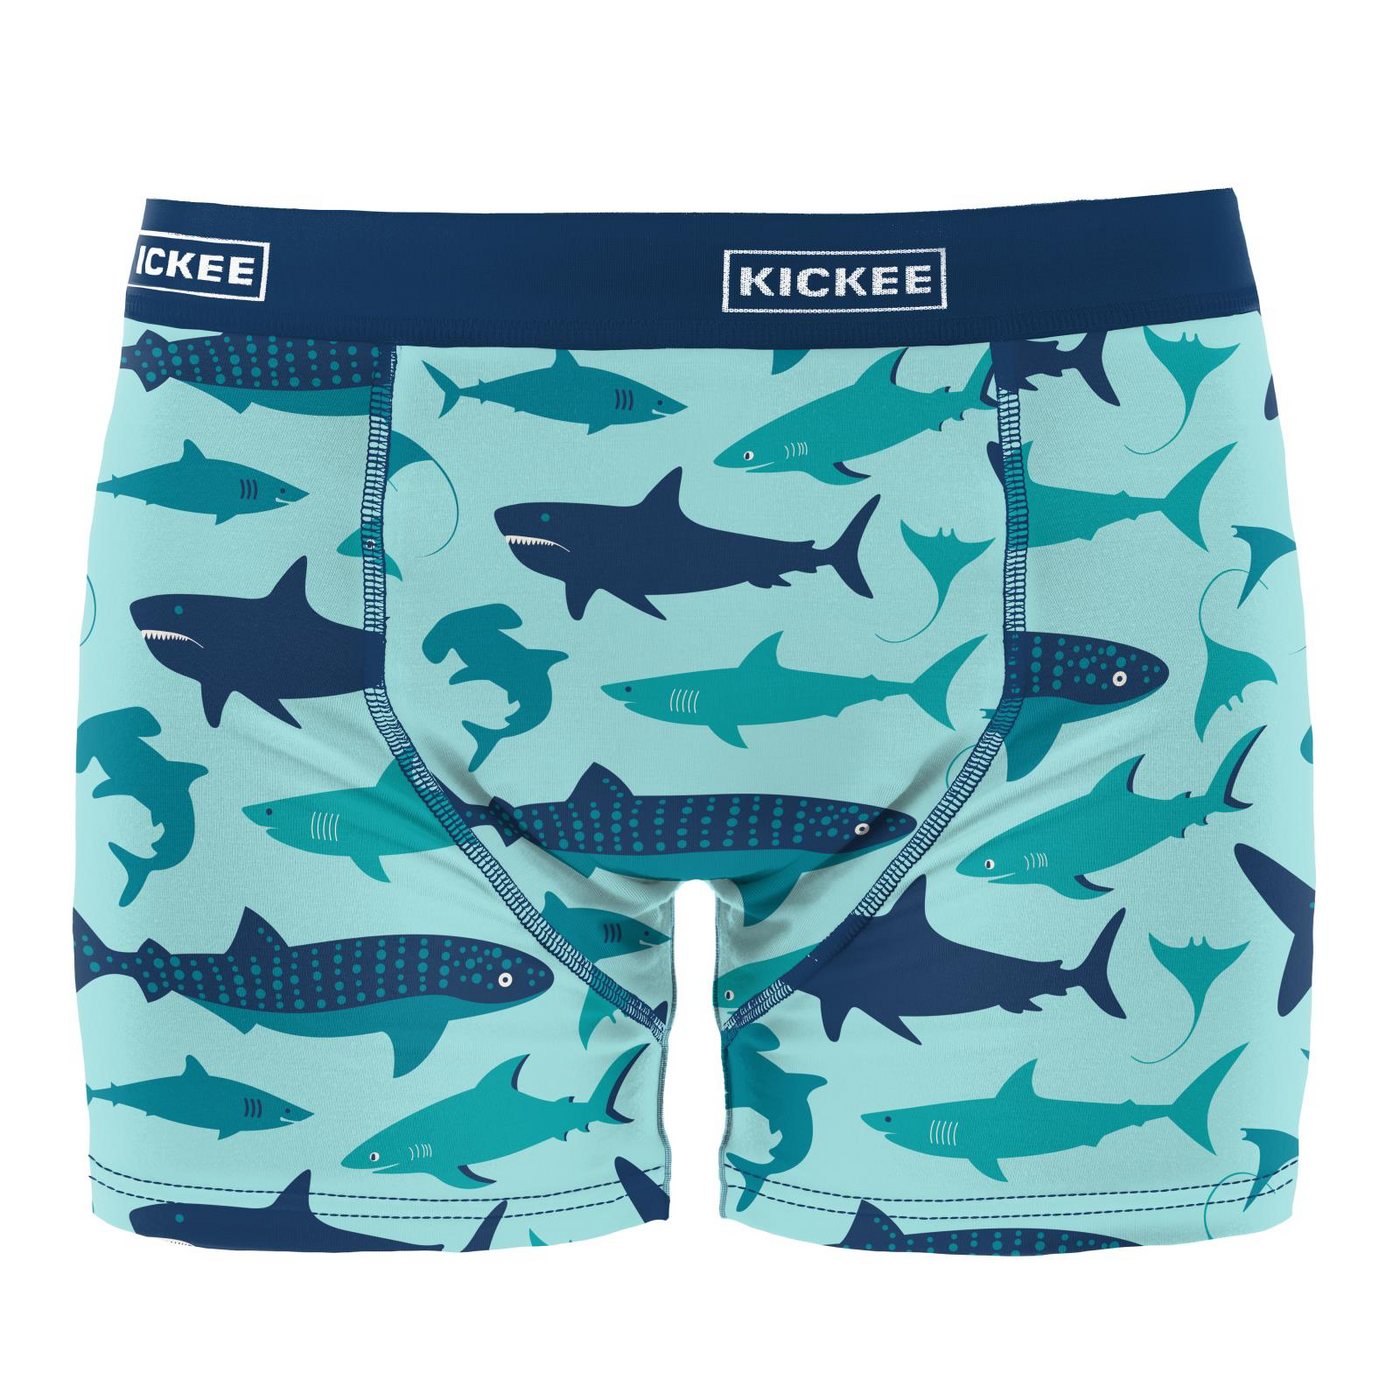 Kickee Pants Men's Boxer Brief: Summer Sky Shark Week